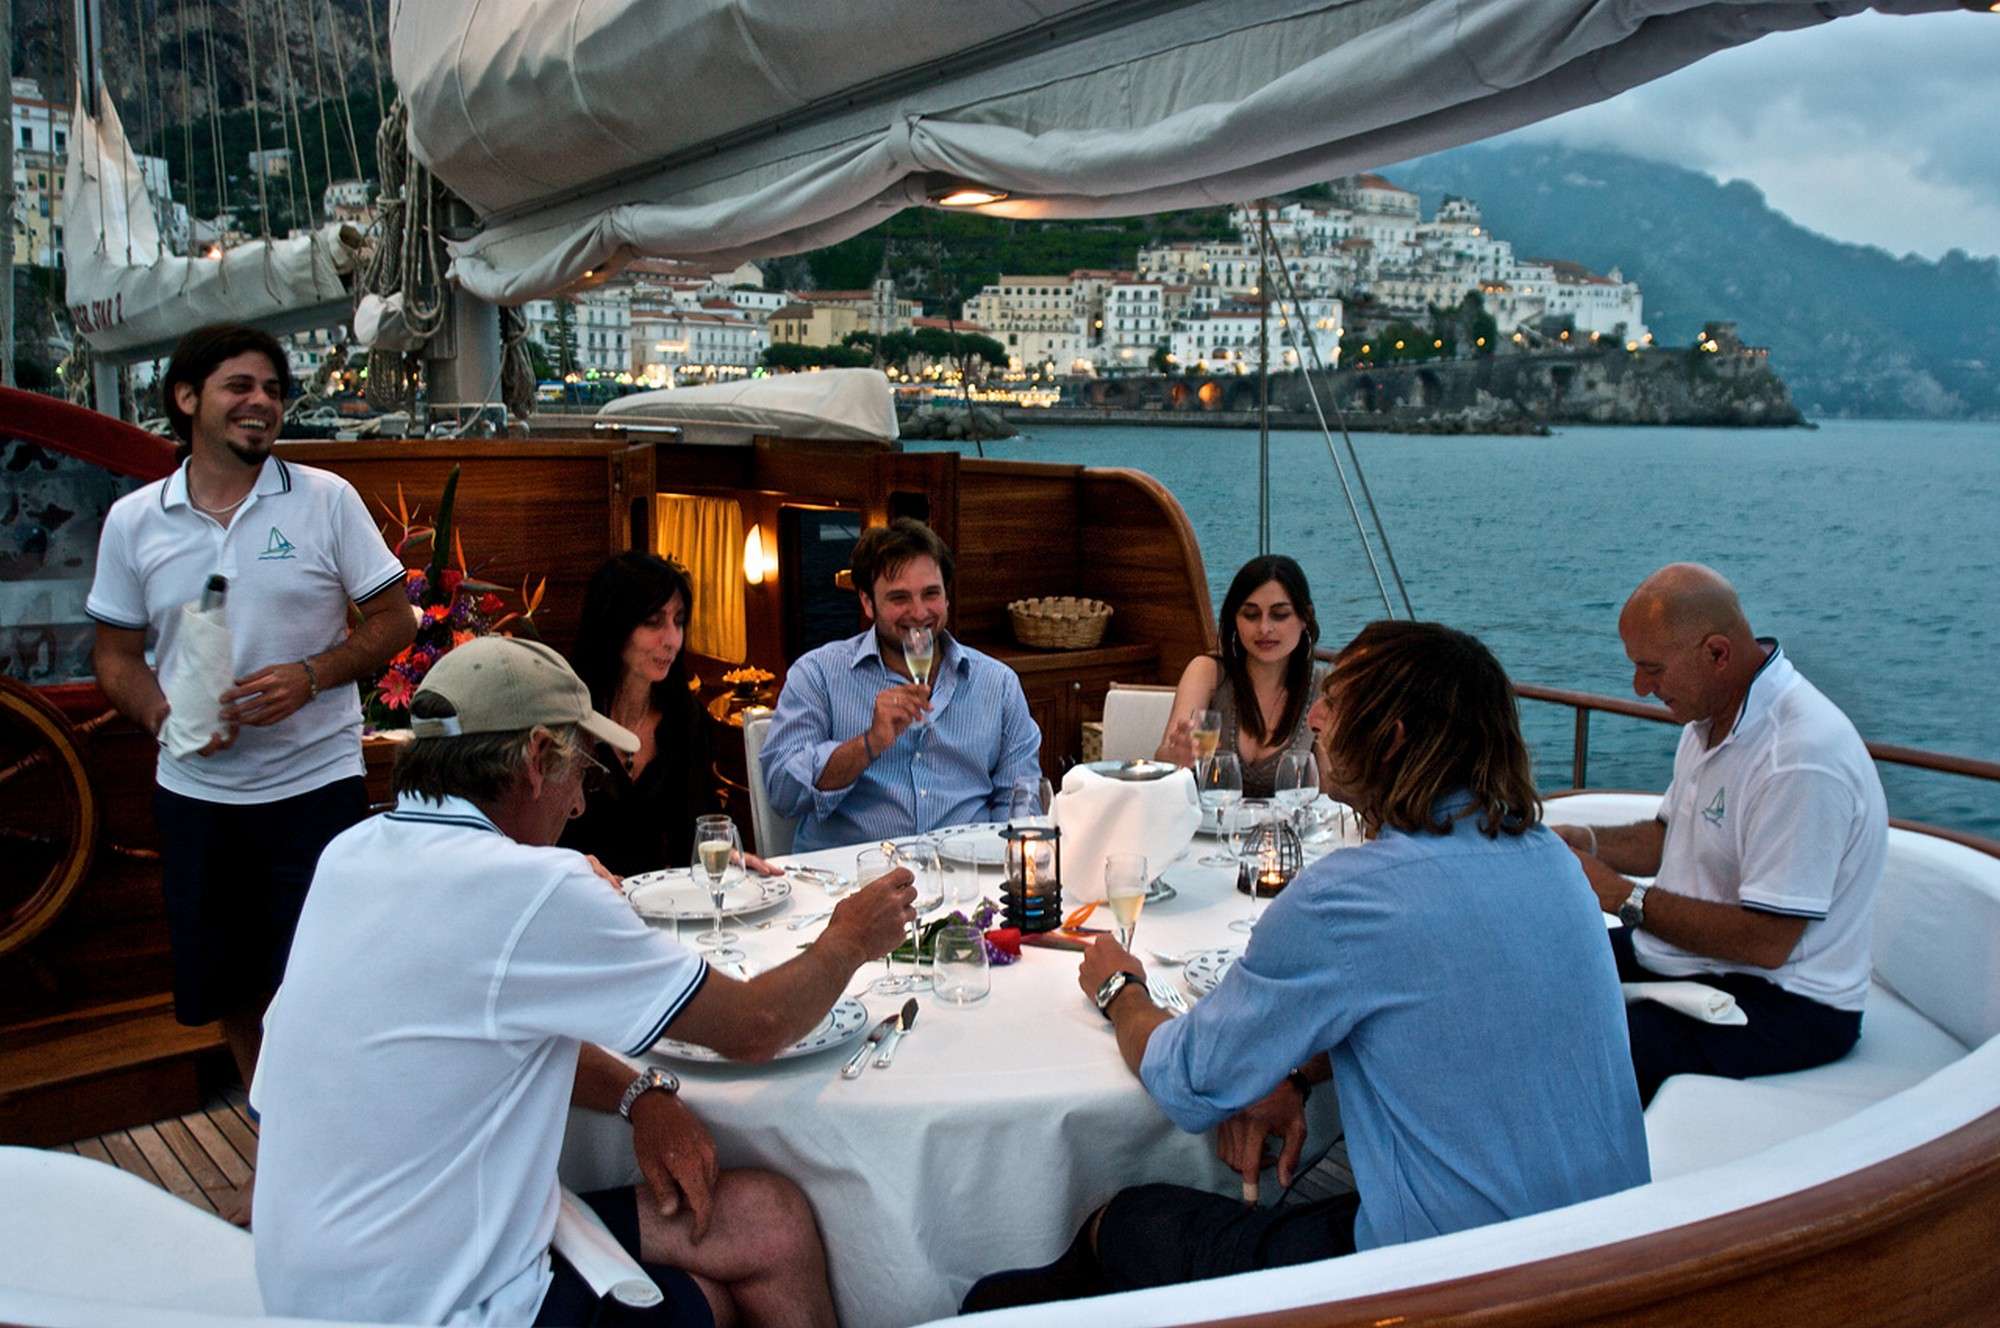 SILVER STAR 2 - Luxury yacht charter France & Boat hire in Fr. Riviera & Tyrrhenian Sea 3